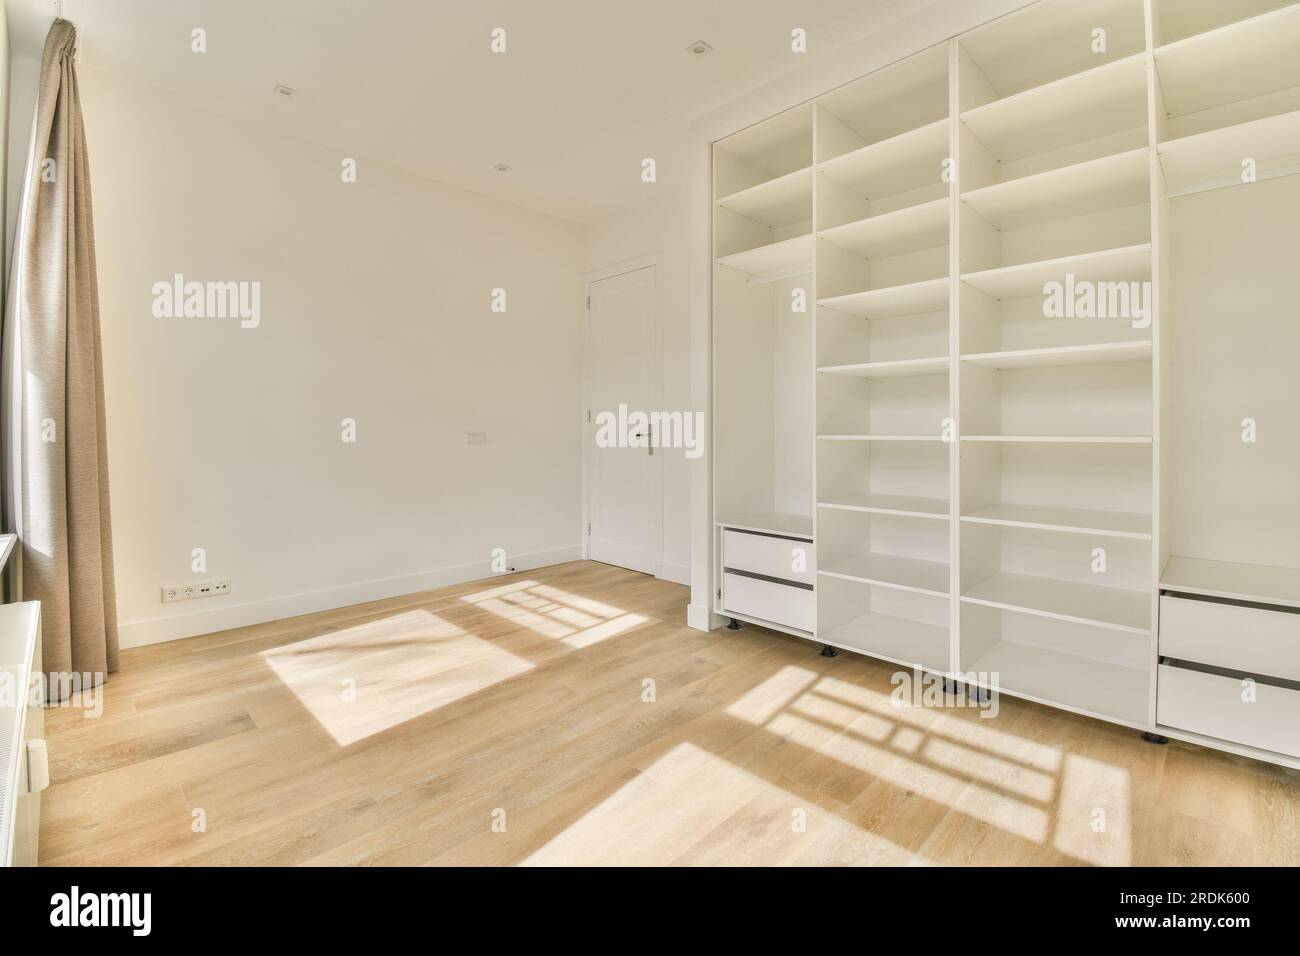 une pièce vide avec plancher en bois et bibliothèques blanches sur le mur, il y a la lumière du soleil qui brille à travers la fenêtre Banque D'Images